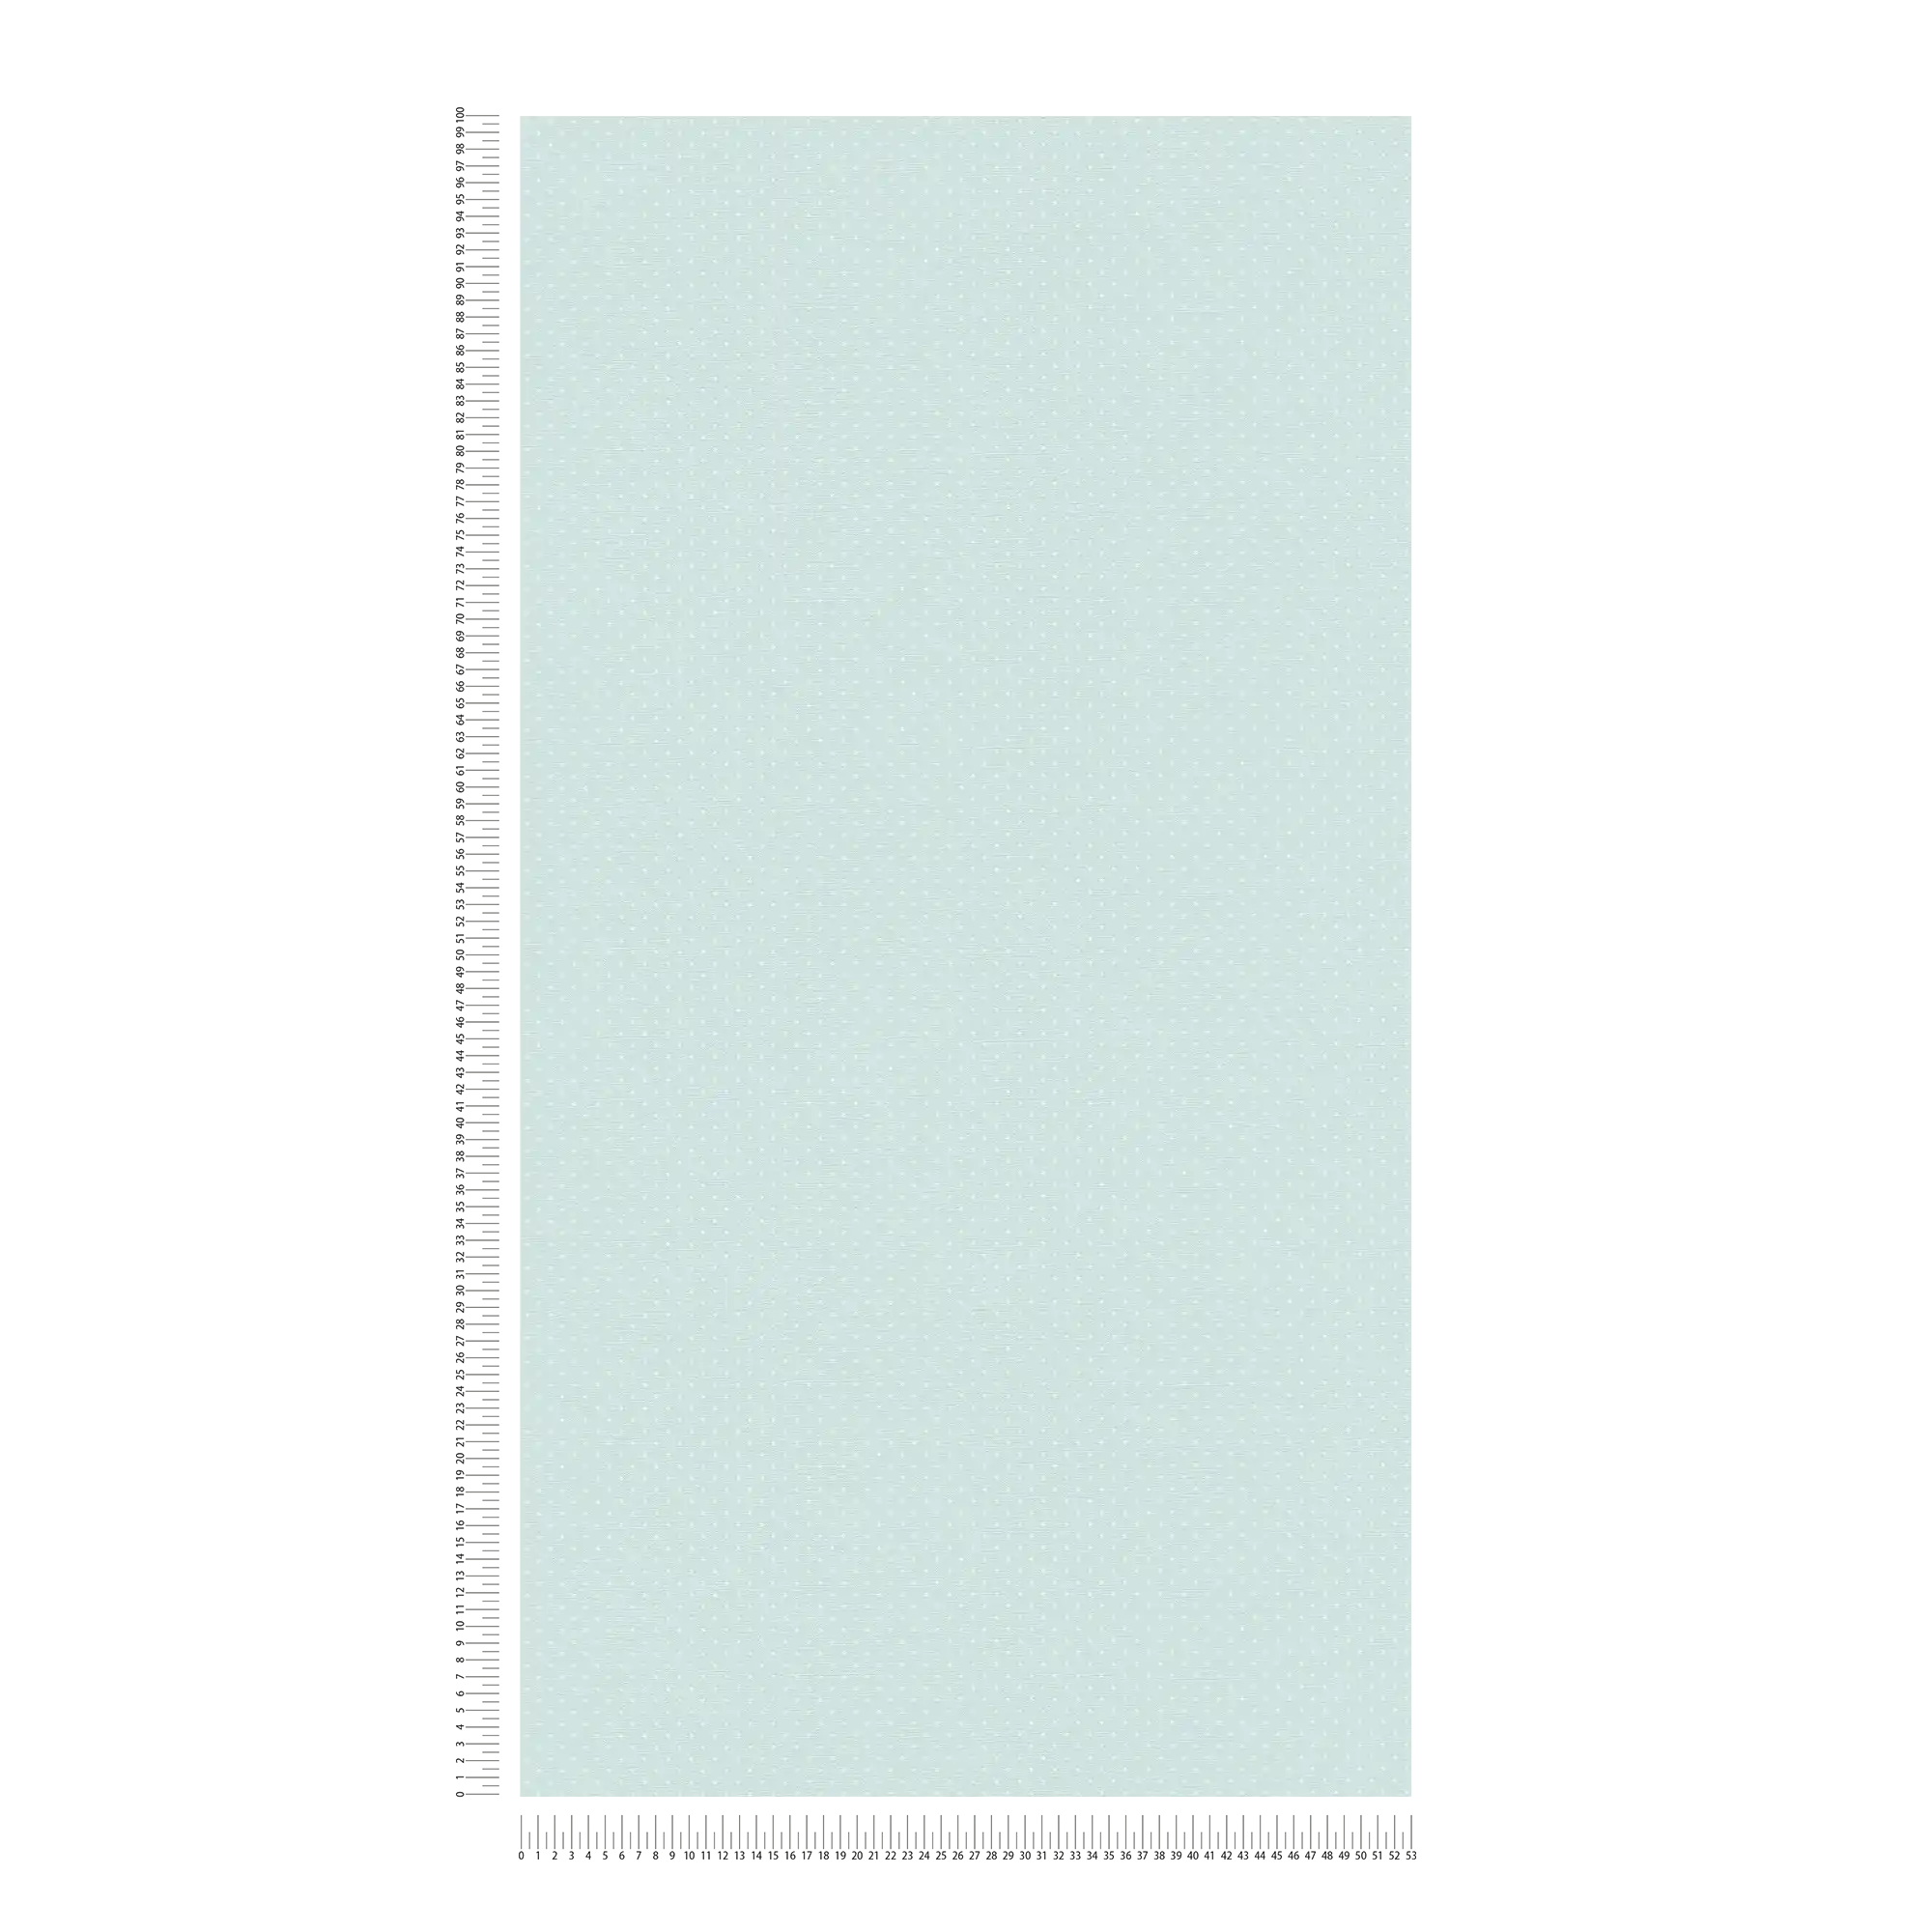             Papel pintado de tejido no tejido con diseño de puntos pequeños - azul claro, blanco
        